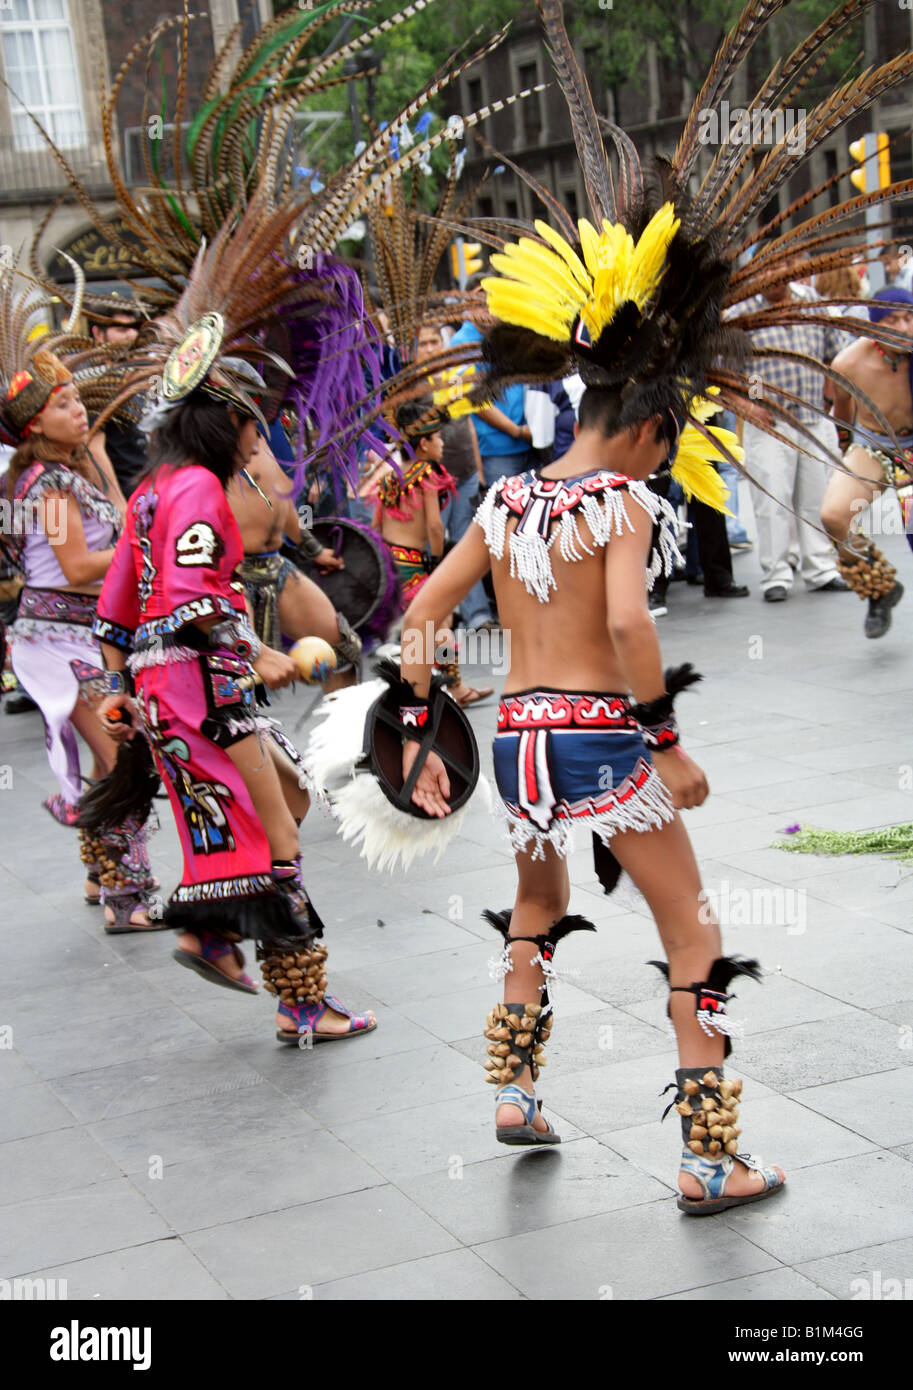 Young Mexican Dancers in Aztec Costume, Zocalo Square, Plaza de la Constitucion, Mexico City, Mexico Stock Photo